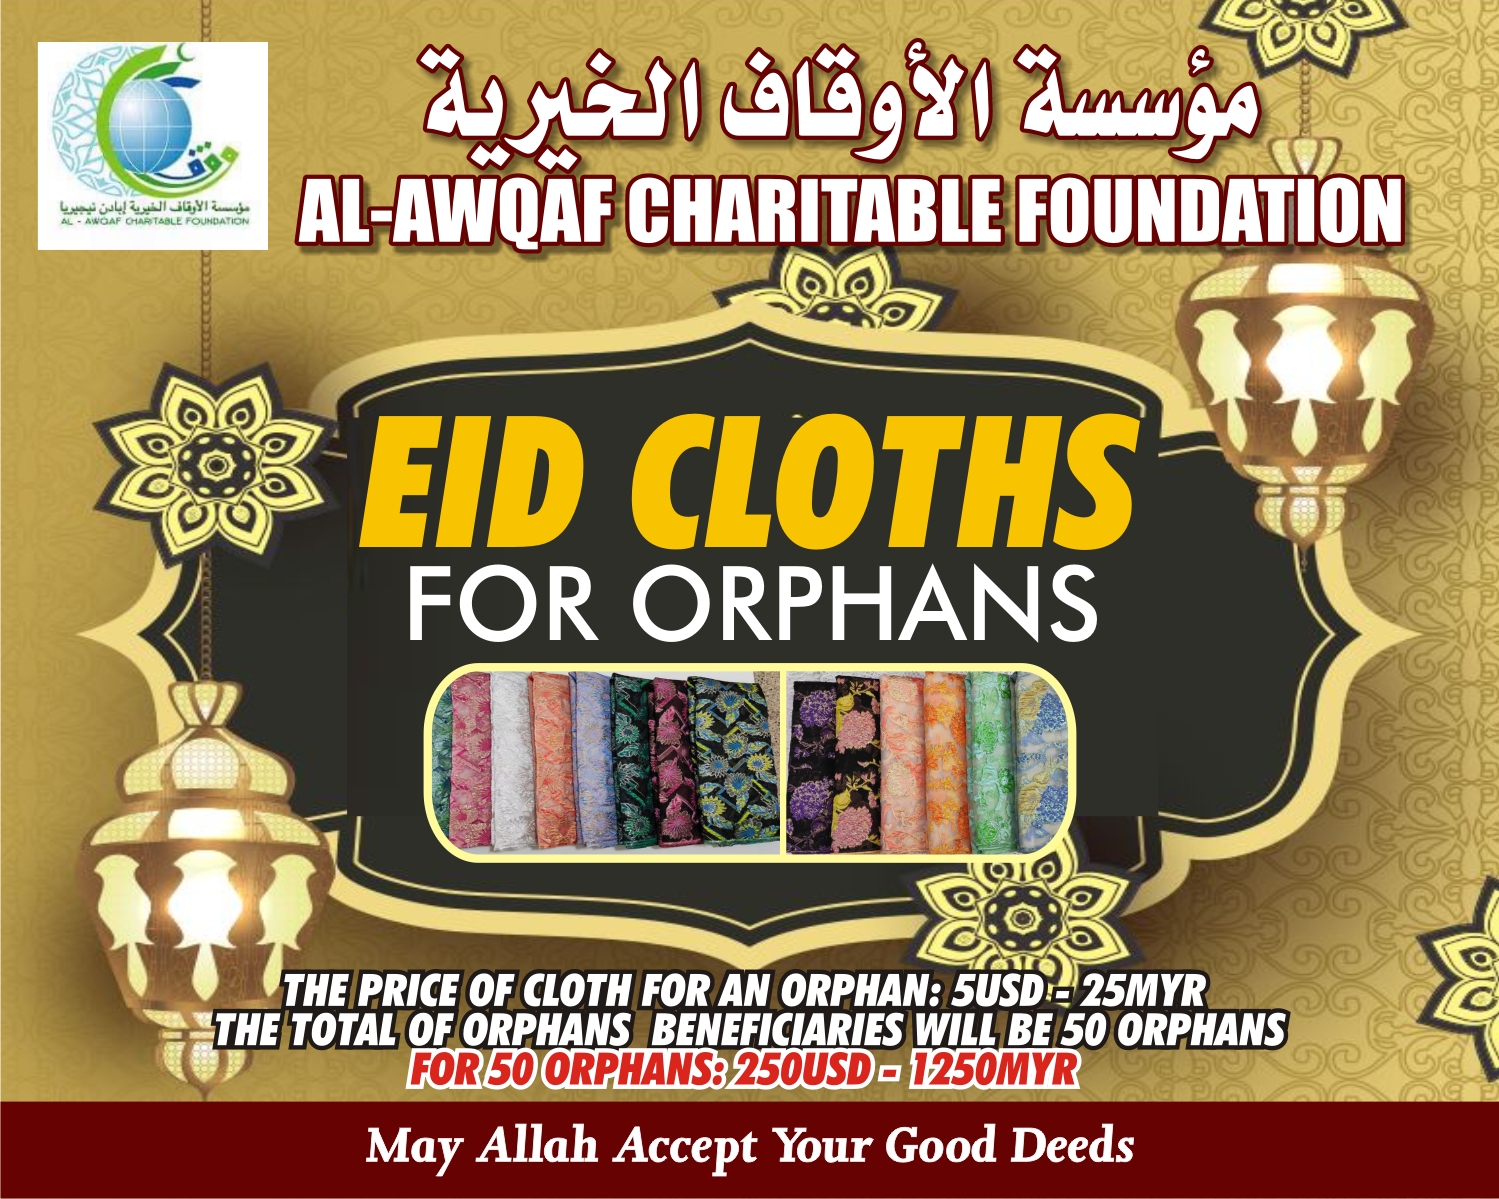 Eid cloths for orphans